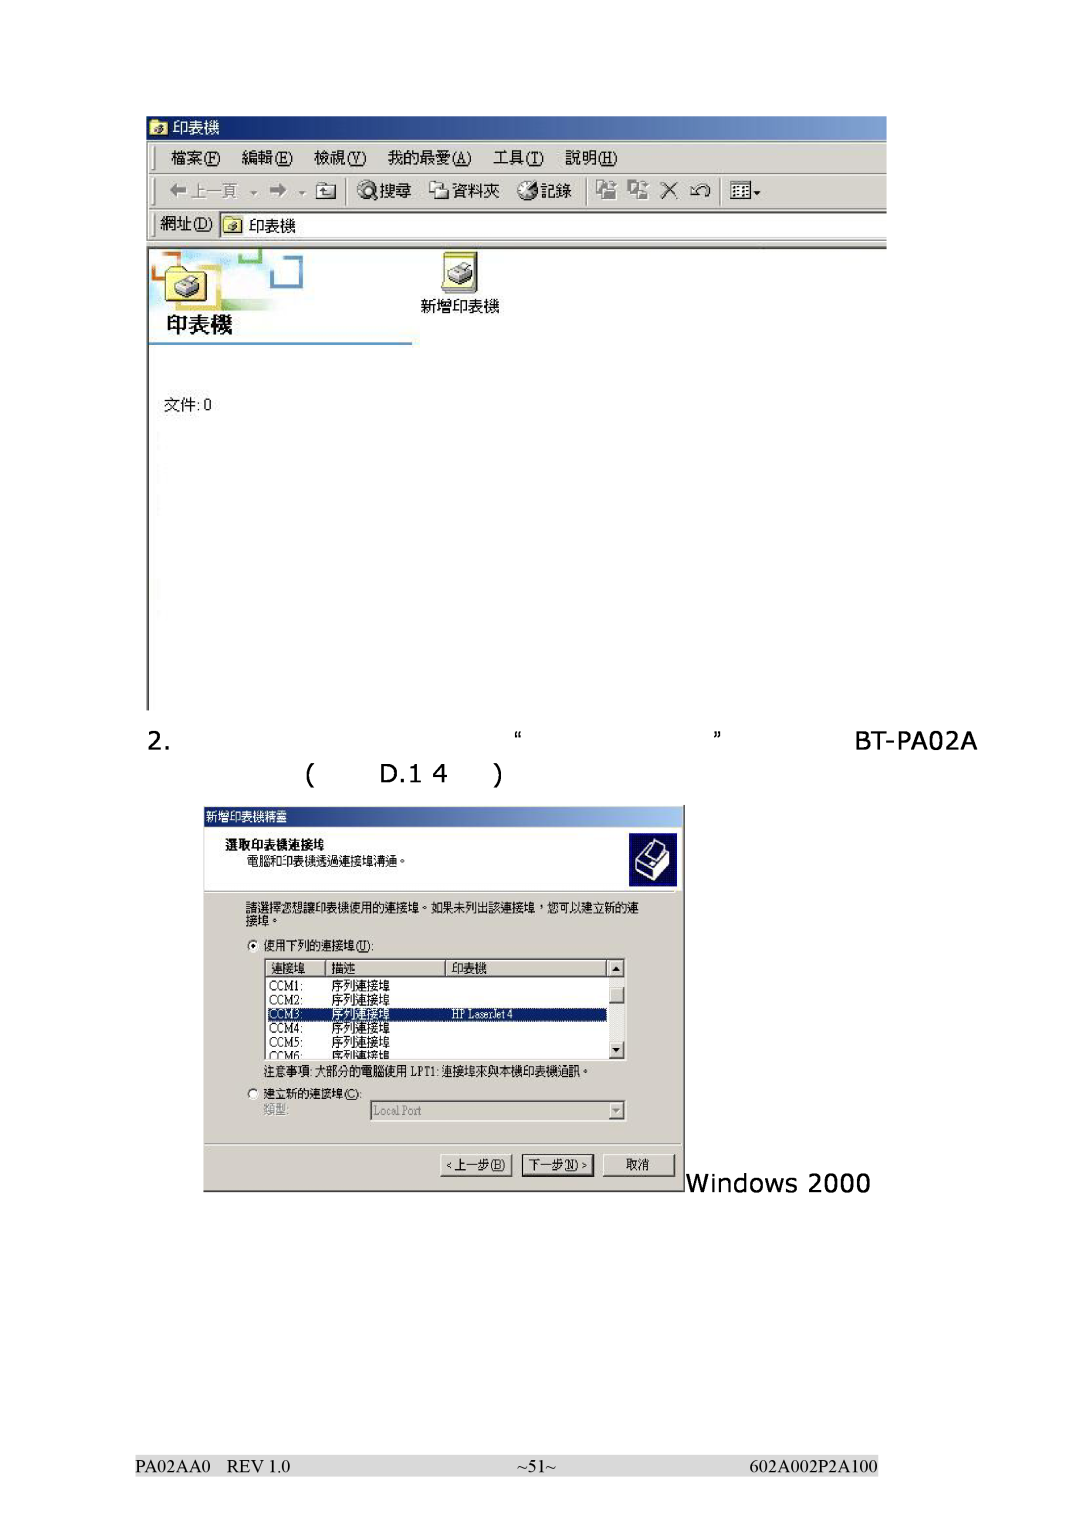 EPoX Computer manual 2. “” BT-PA02A D.1, Windows, PA02AA0 REV, ~51~, 602A002P2A100 